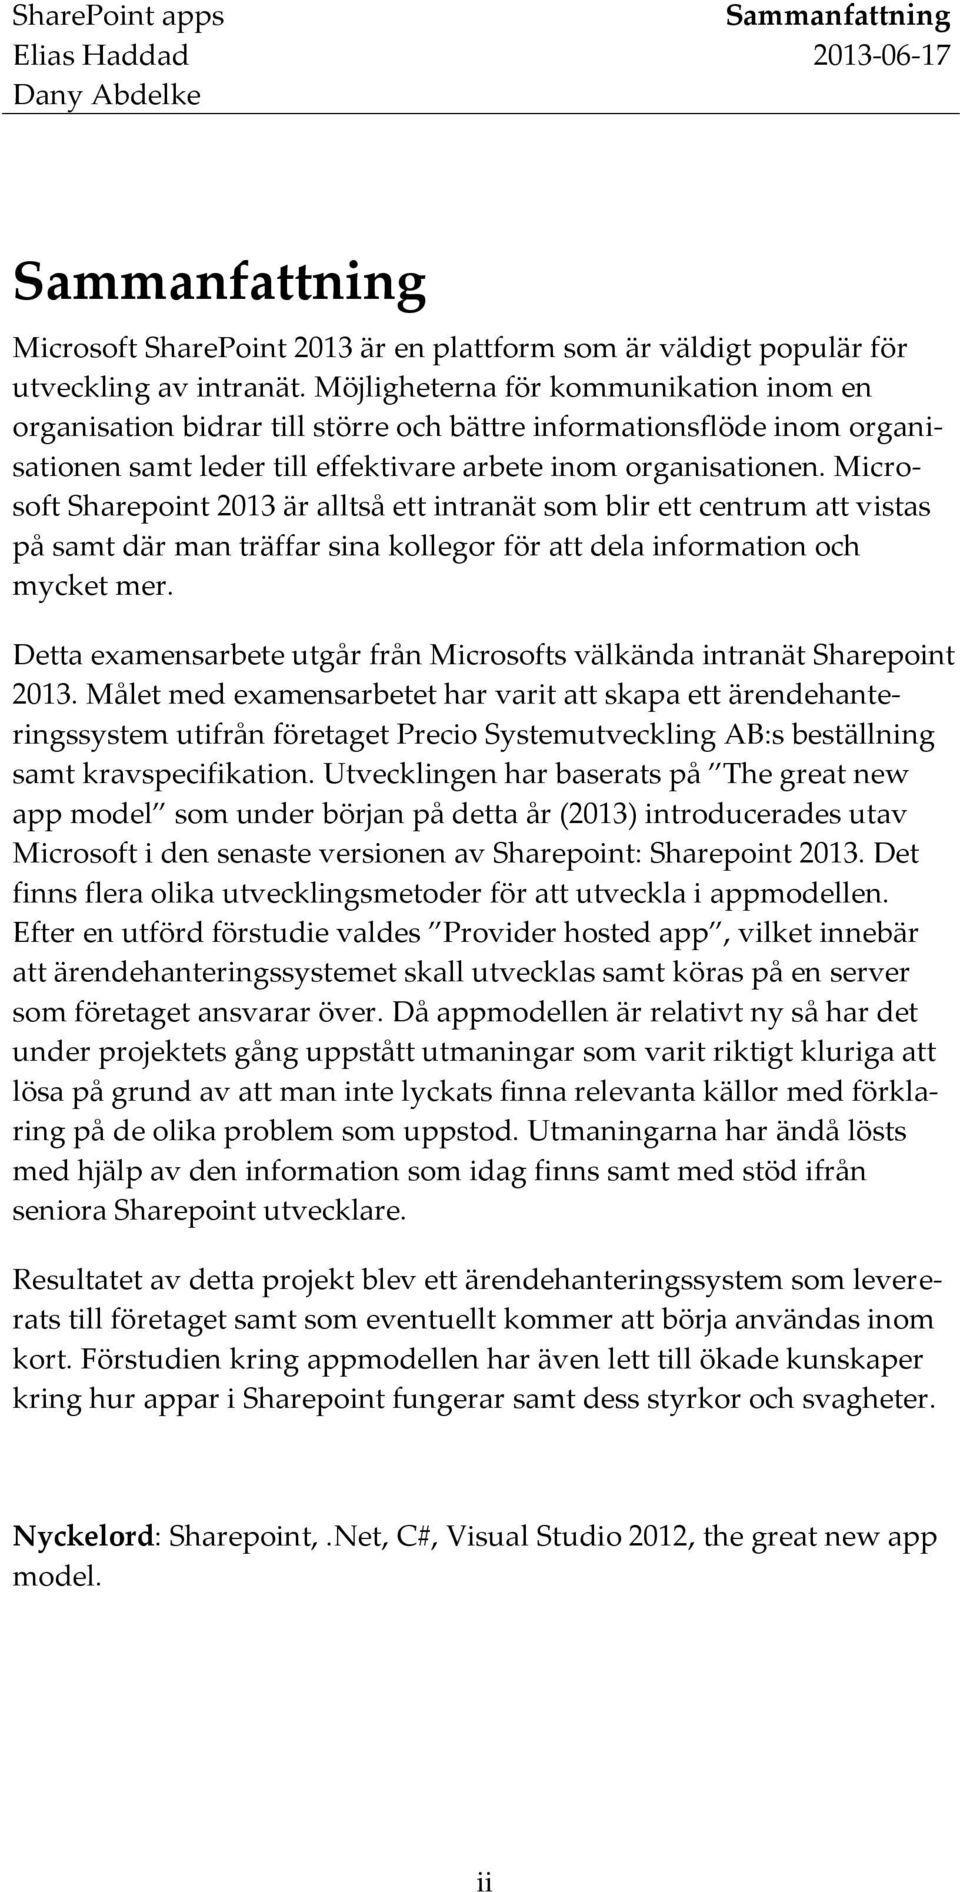 Microsoft Sharepoint 2013 är alltså ett intranät som blir ett centrum att vistas på samt där man träffar sina kollegor för att dela information och mycket mer.